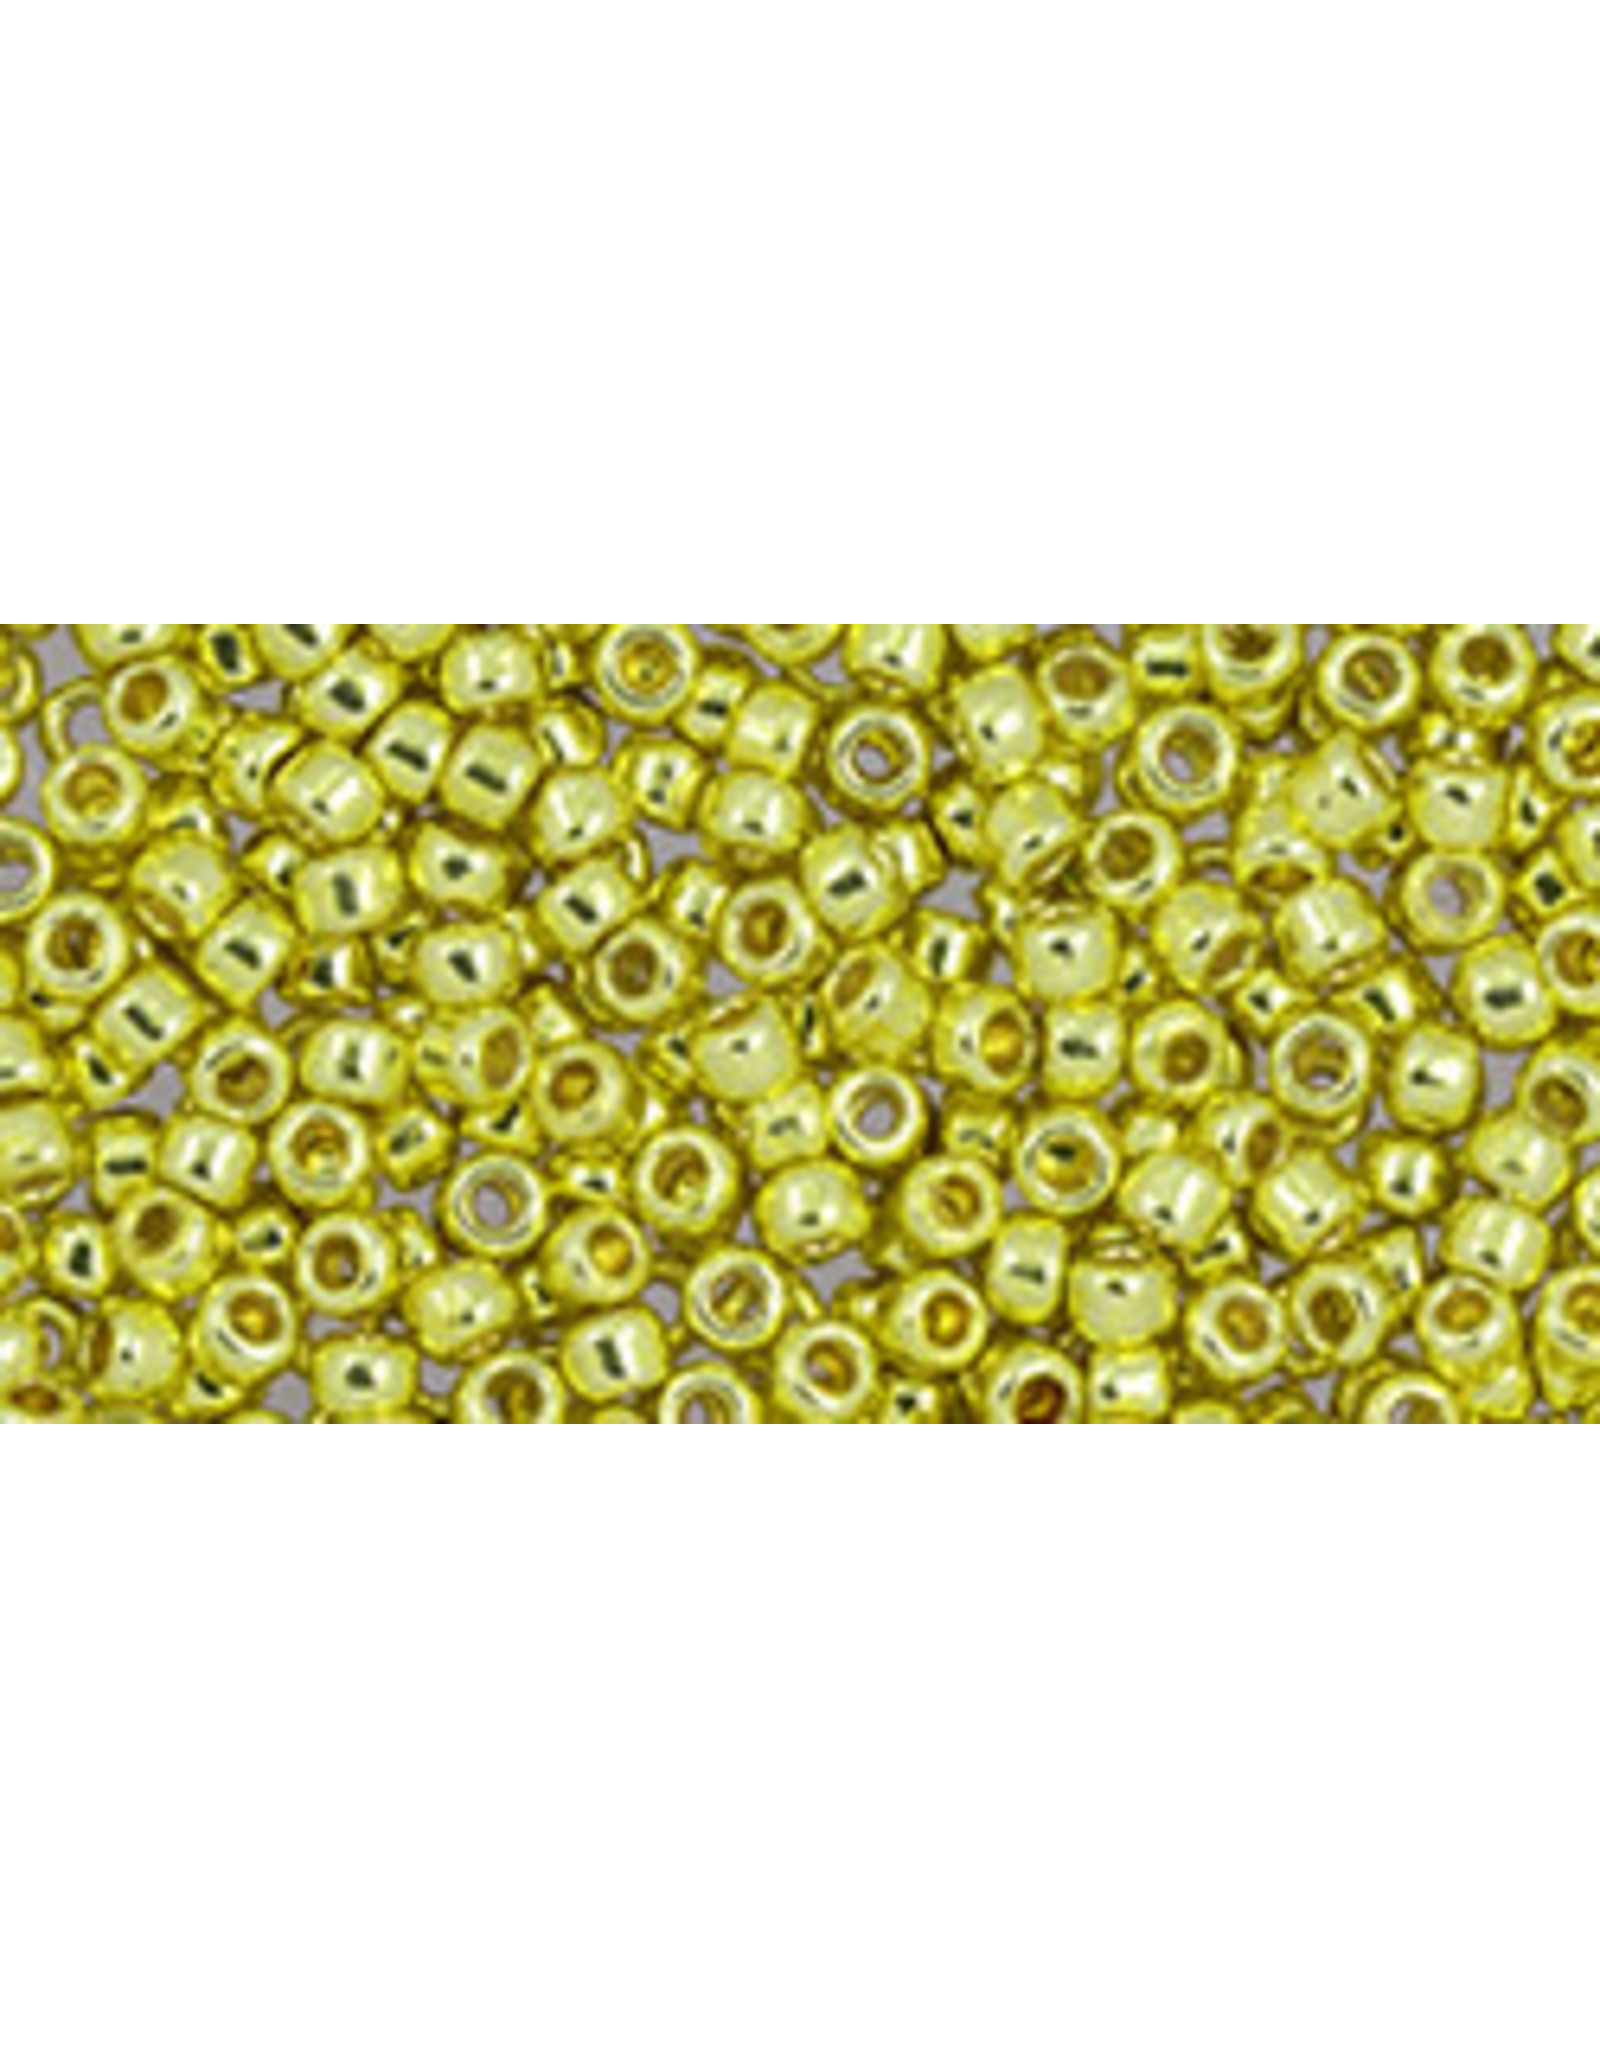 Toho pf590B 11  Round 40g  Yellow Gold  Metallic